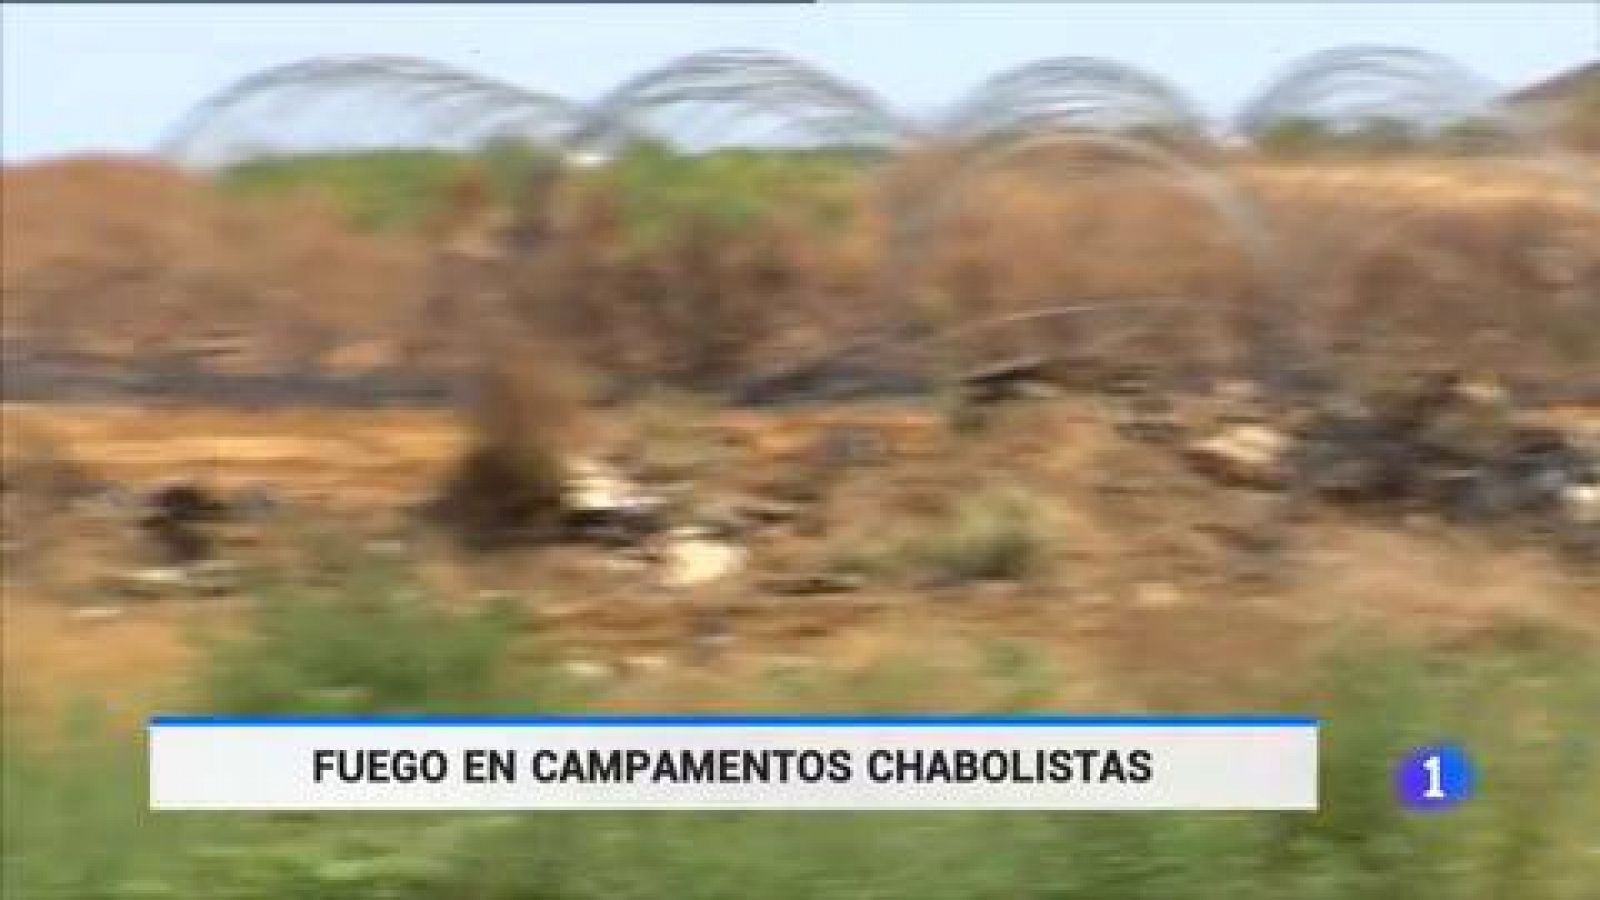 Lepe | El fuego arrasa dos poblados chabolistas - RTVE.es